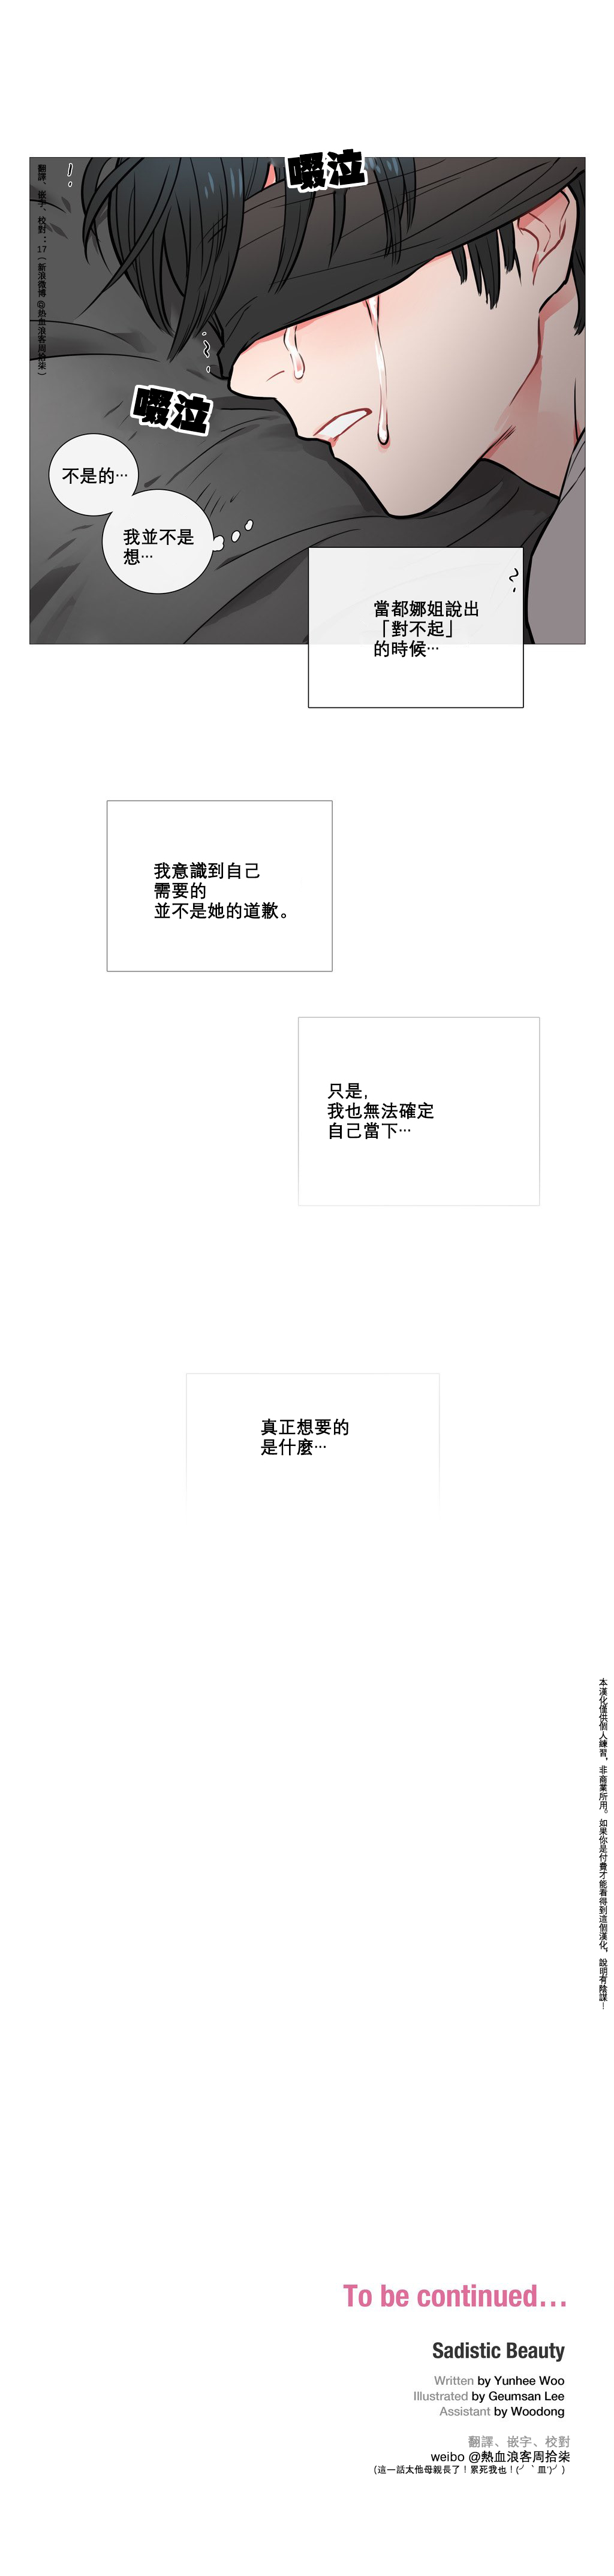 【金山】サディスティックビューティーCh.1-24【中国語】【17汉化】